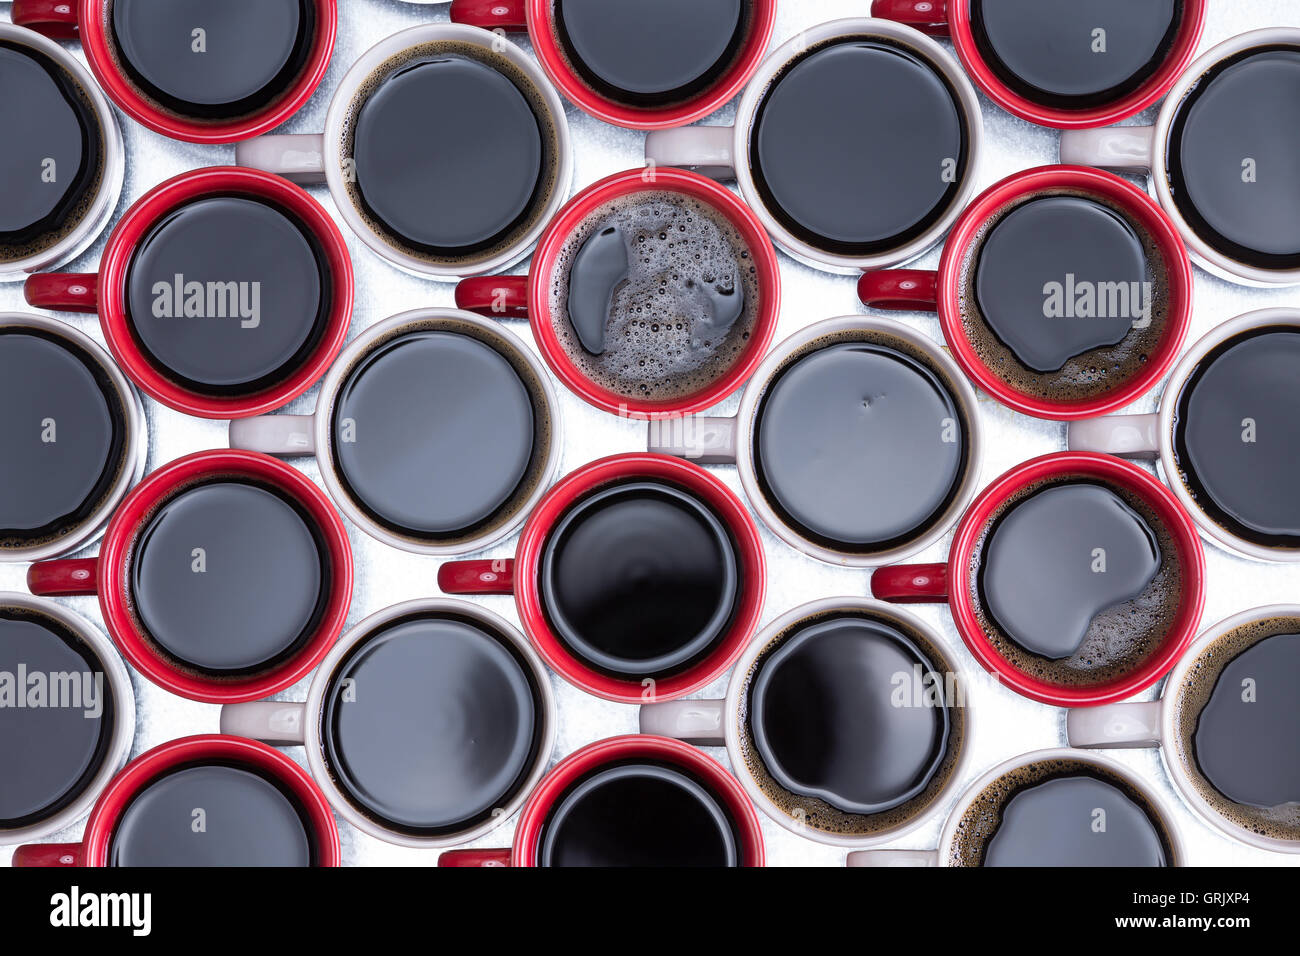 Motif décoratif de café noir en rouge et blanc, café, disposées en rangées alternées avec toutes les poignées vers la gauche sur Banque D'Images